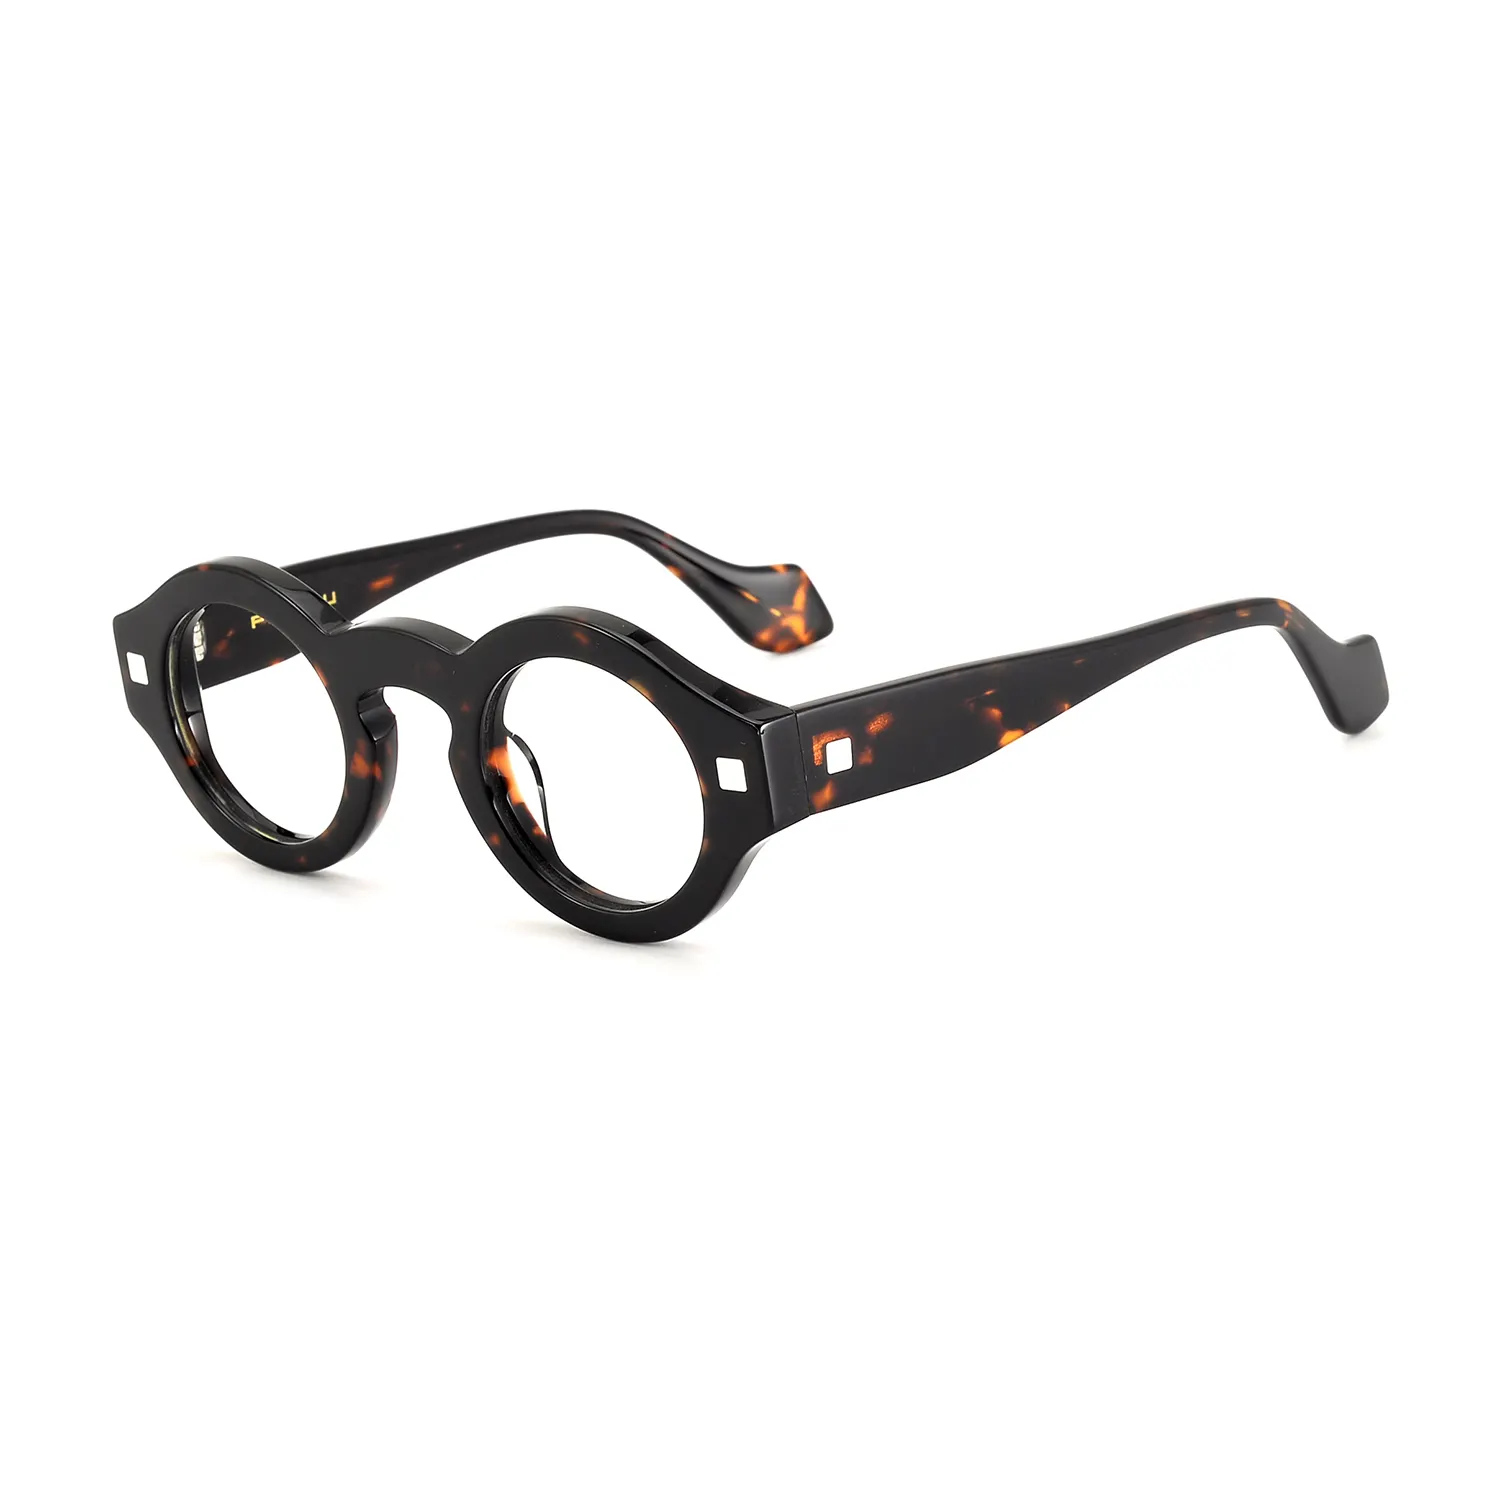 Marque de luxe meilleure qualité homme homme lunettes de lecture lunettes montures de lunettes Logo personnalisé